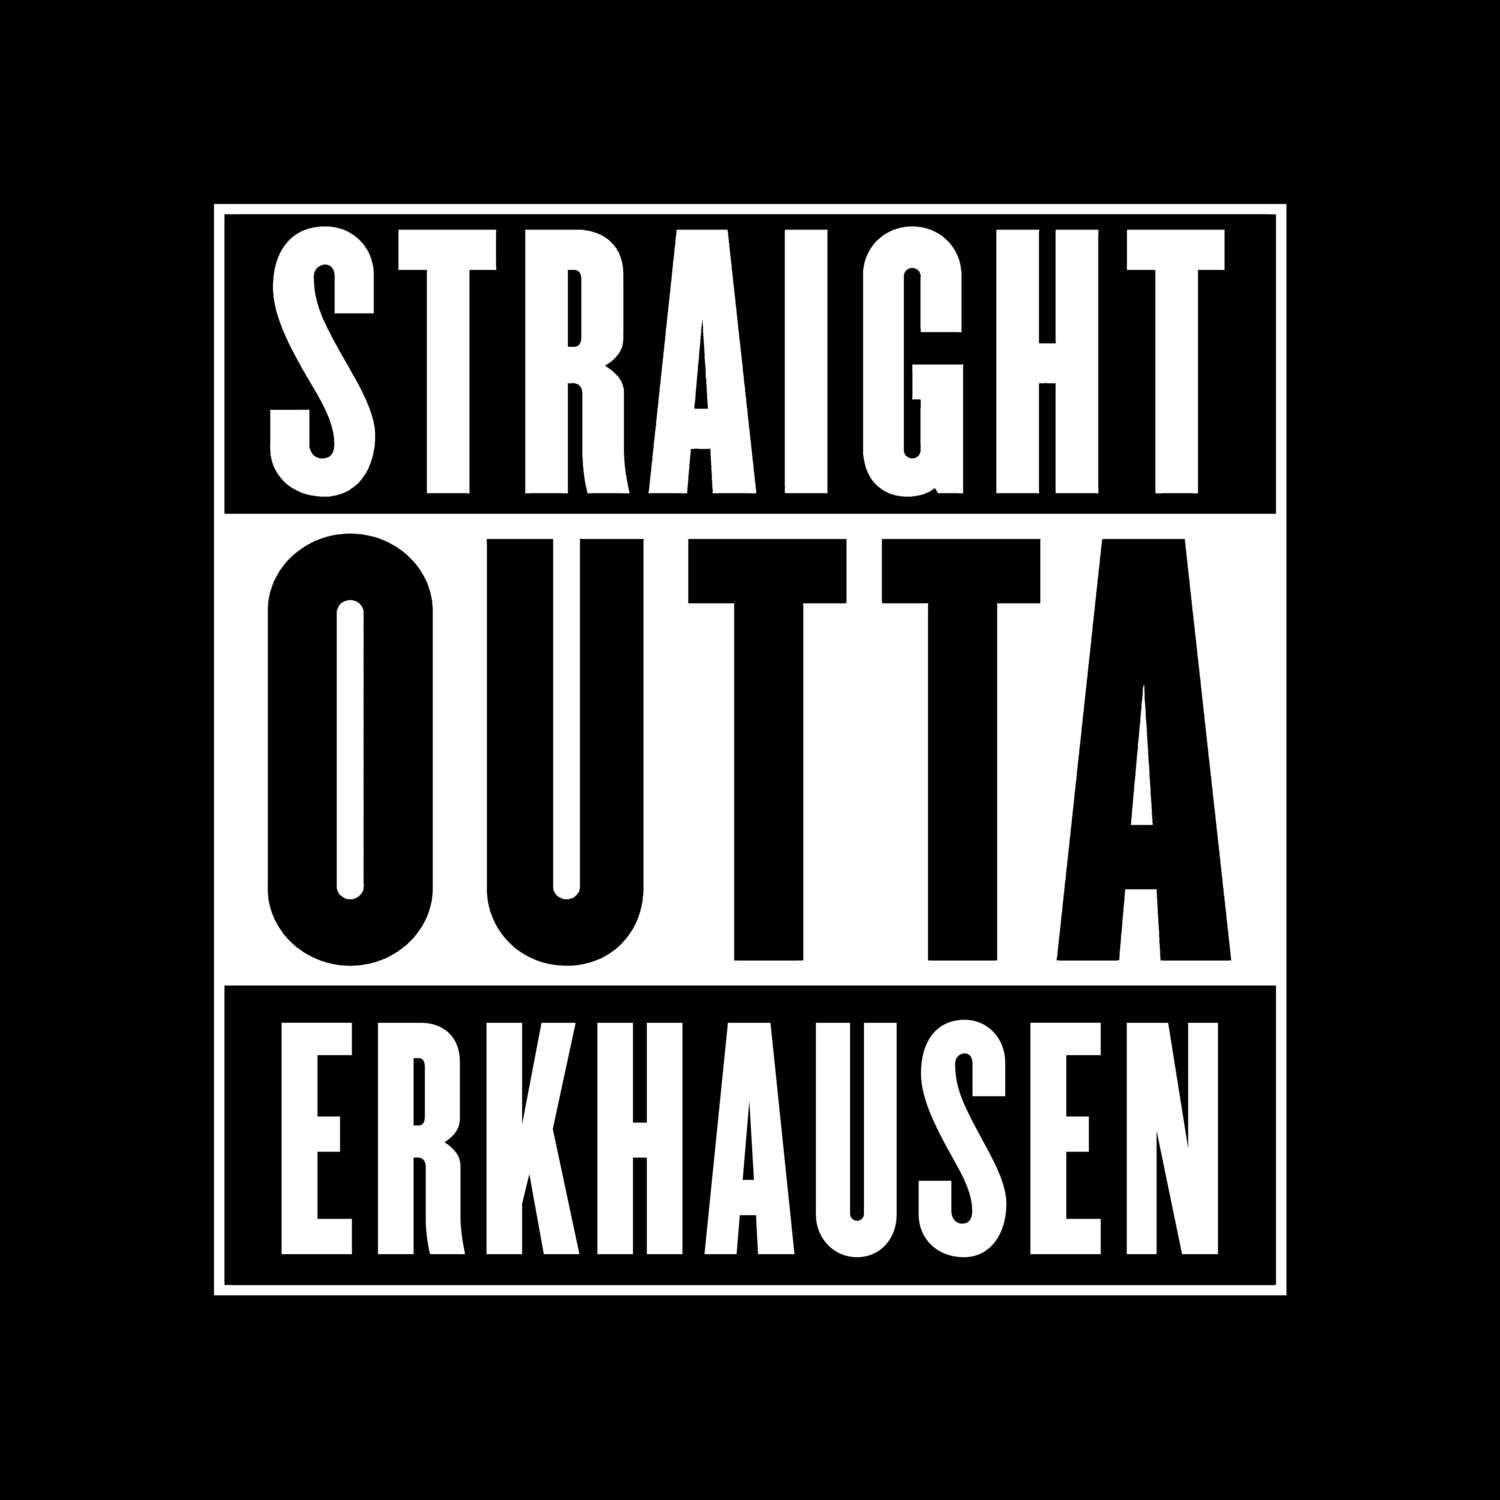 Erkhausen T-Shirt »Straight Outta«